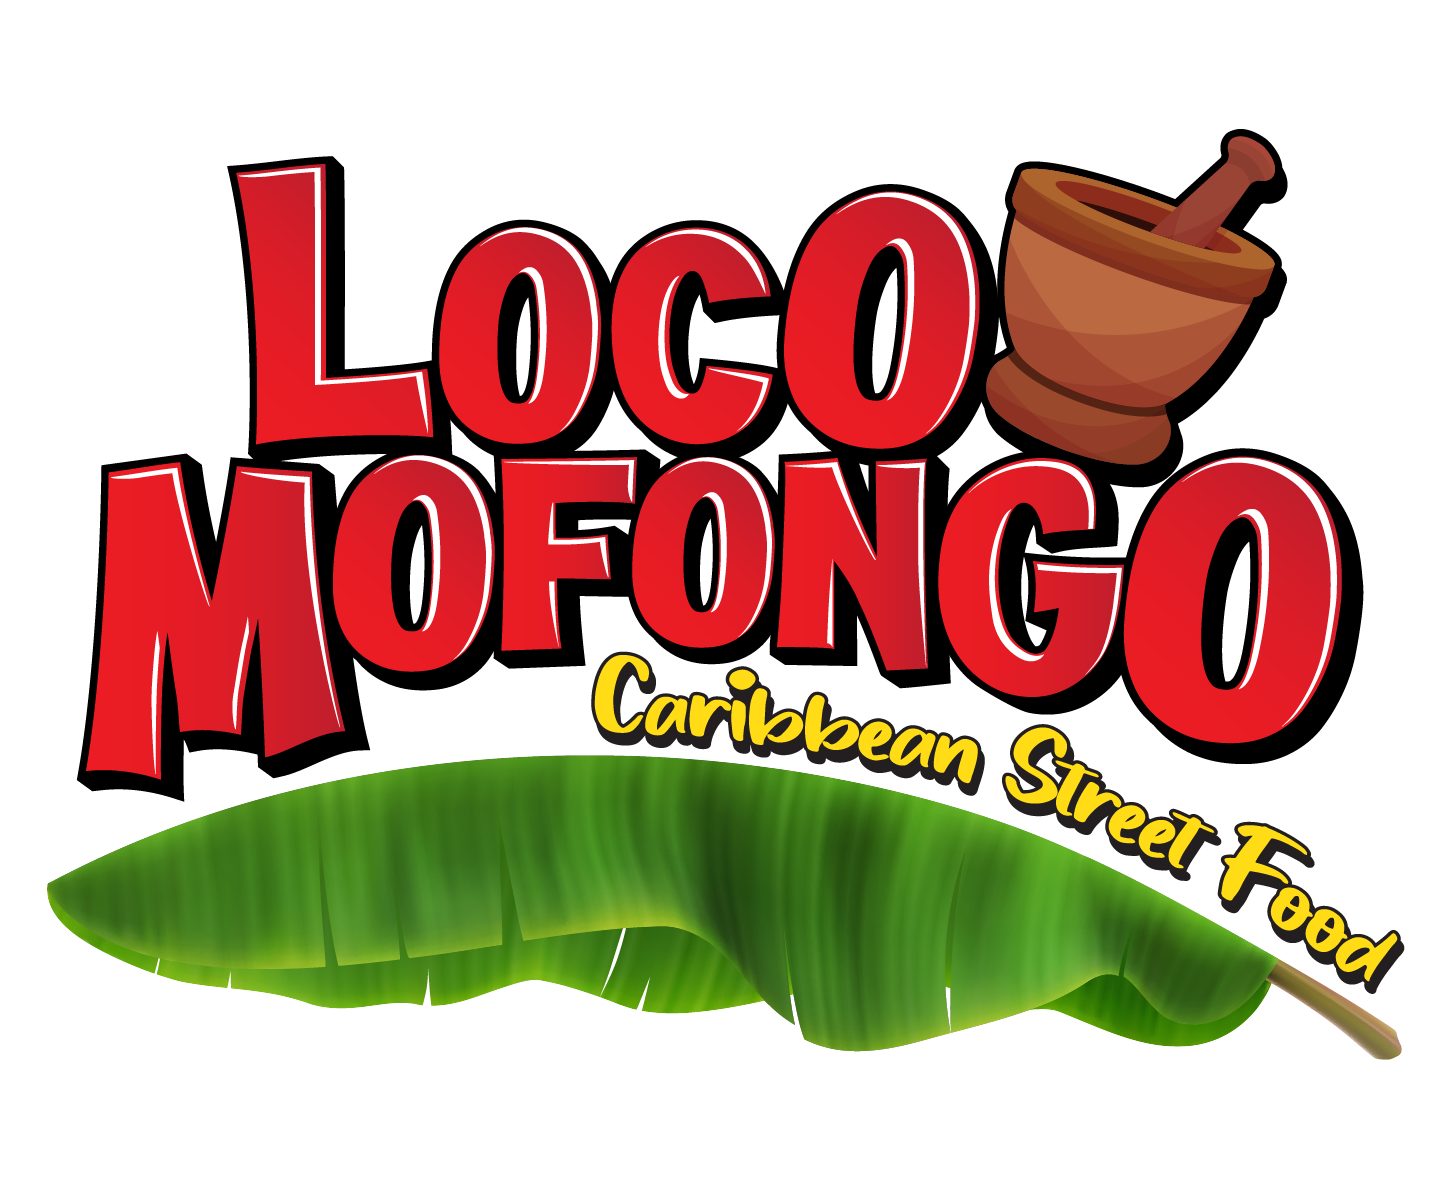 Loco Mofongo